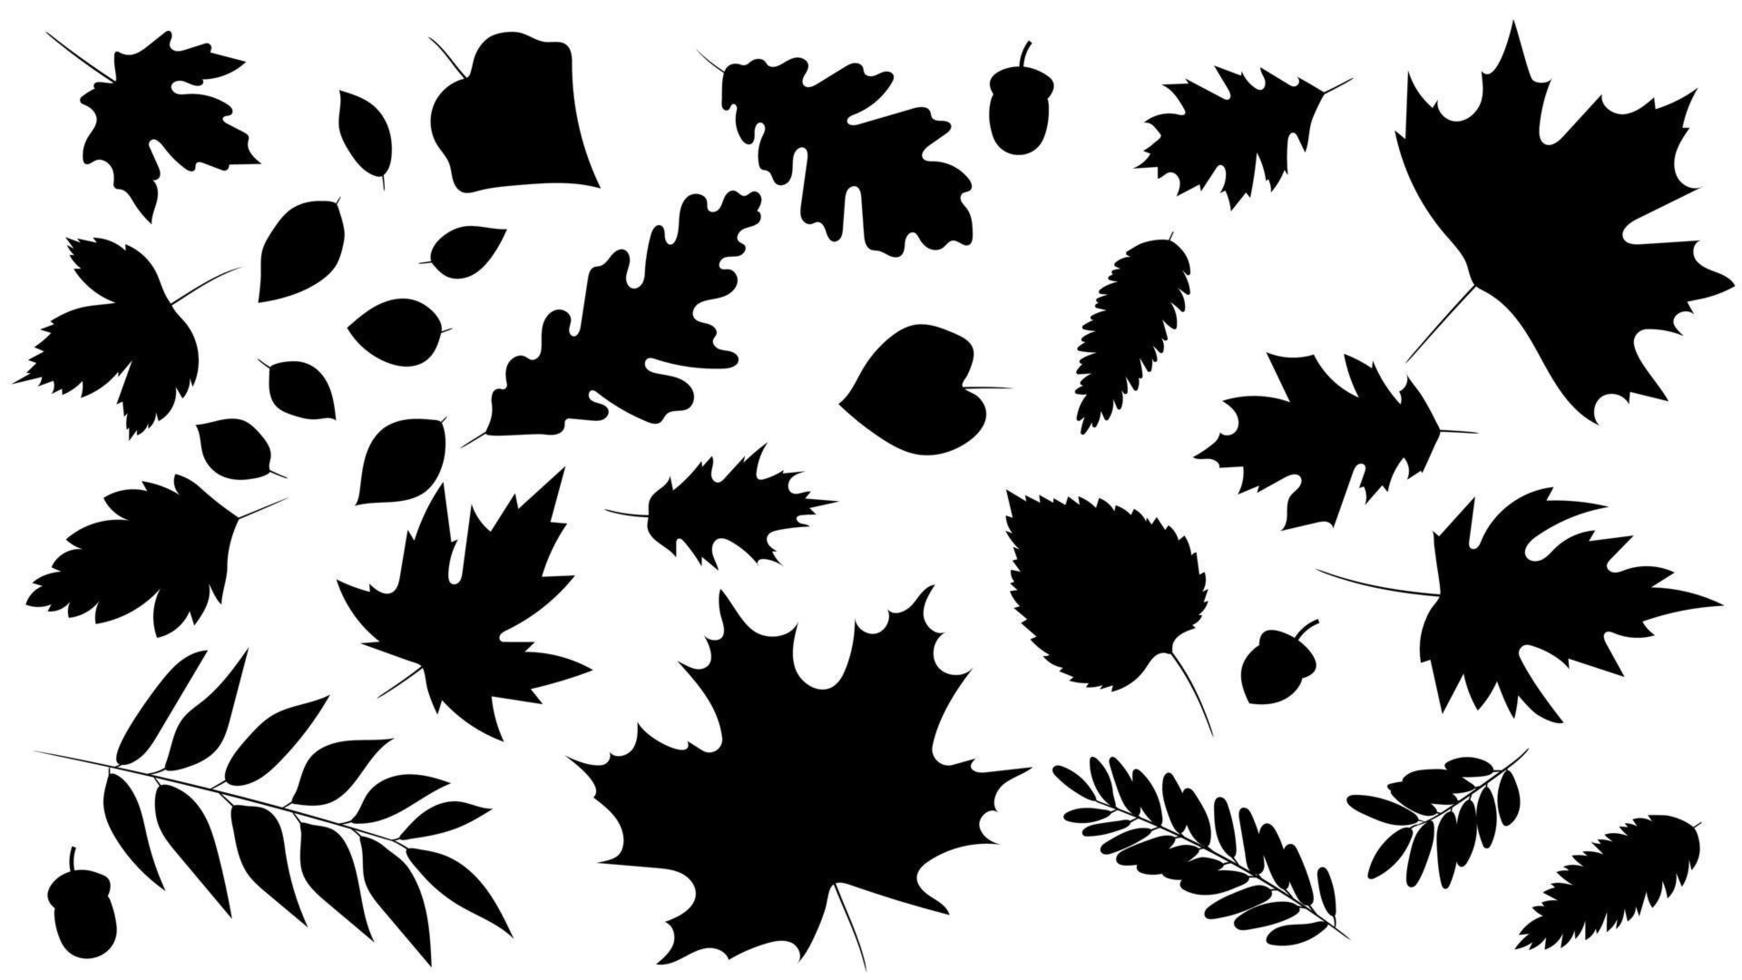 grote set bladeren van verschillende soorten bomen geïsoleerd. set van zwart herfstblad eiken, esdoorn, lijsterbes en eikels. realistische silhouetstijl. vectorillustratie. set van gebladerte. vector